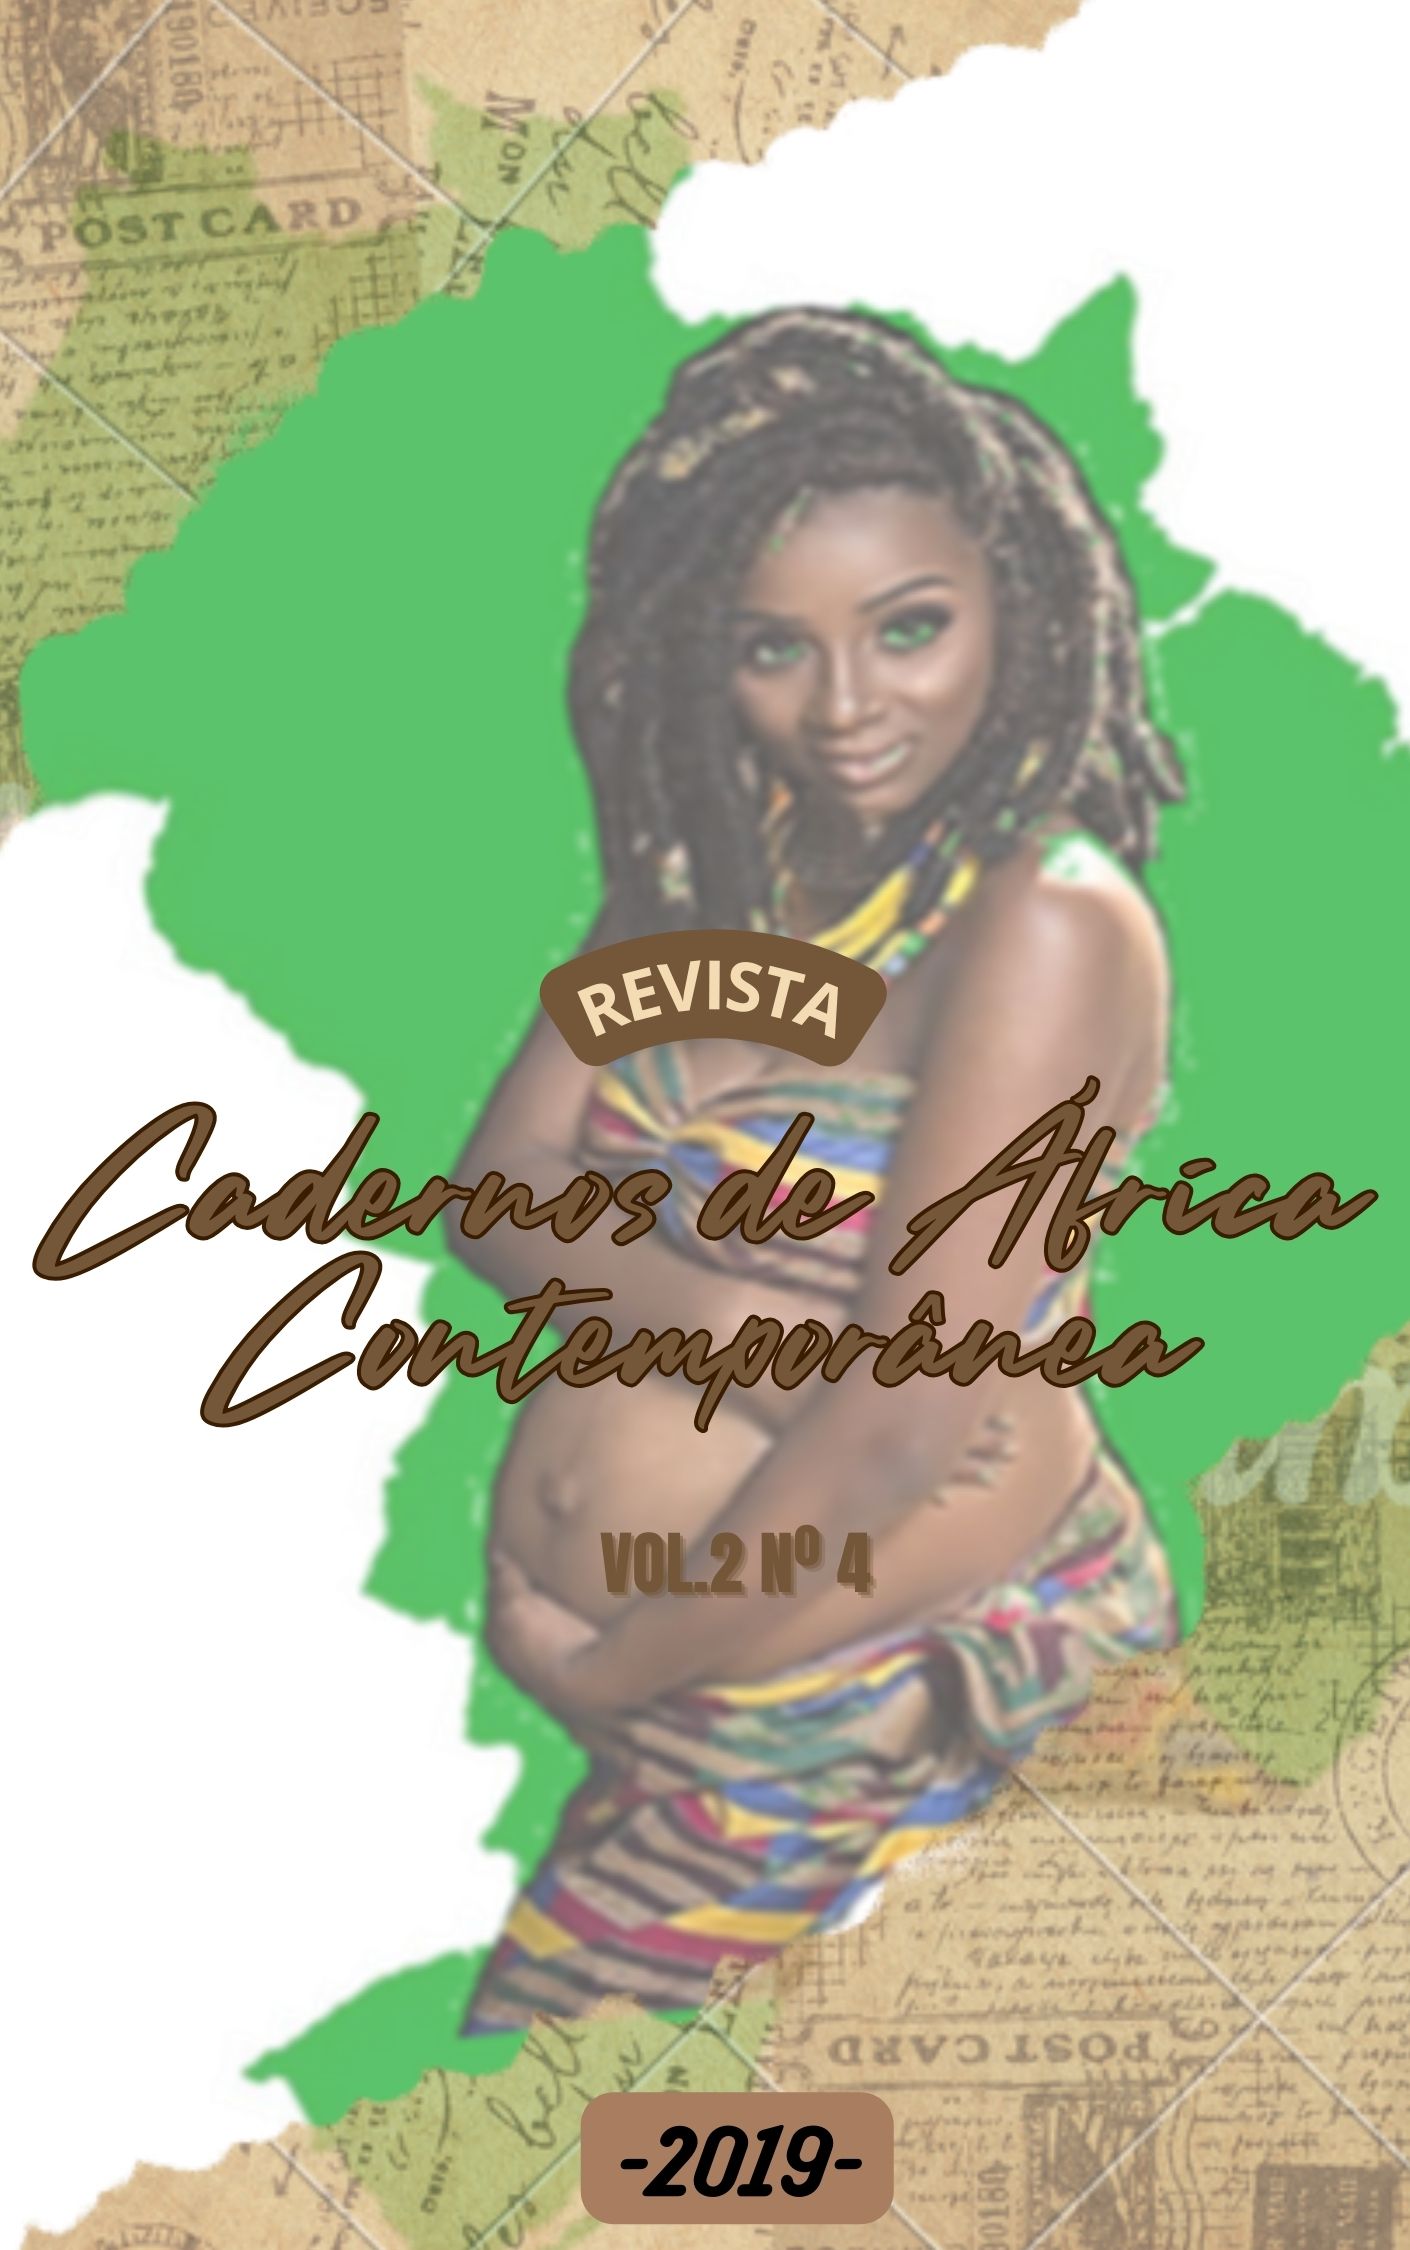 					Visualizar v. 2 n. 4 (2019): Cadernos de África Contemporânea
				